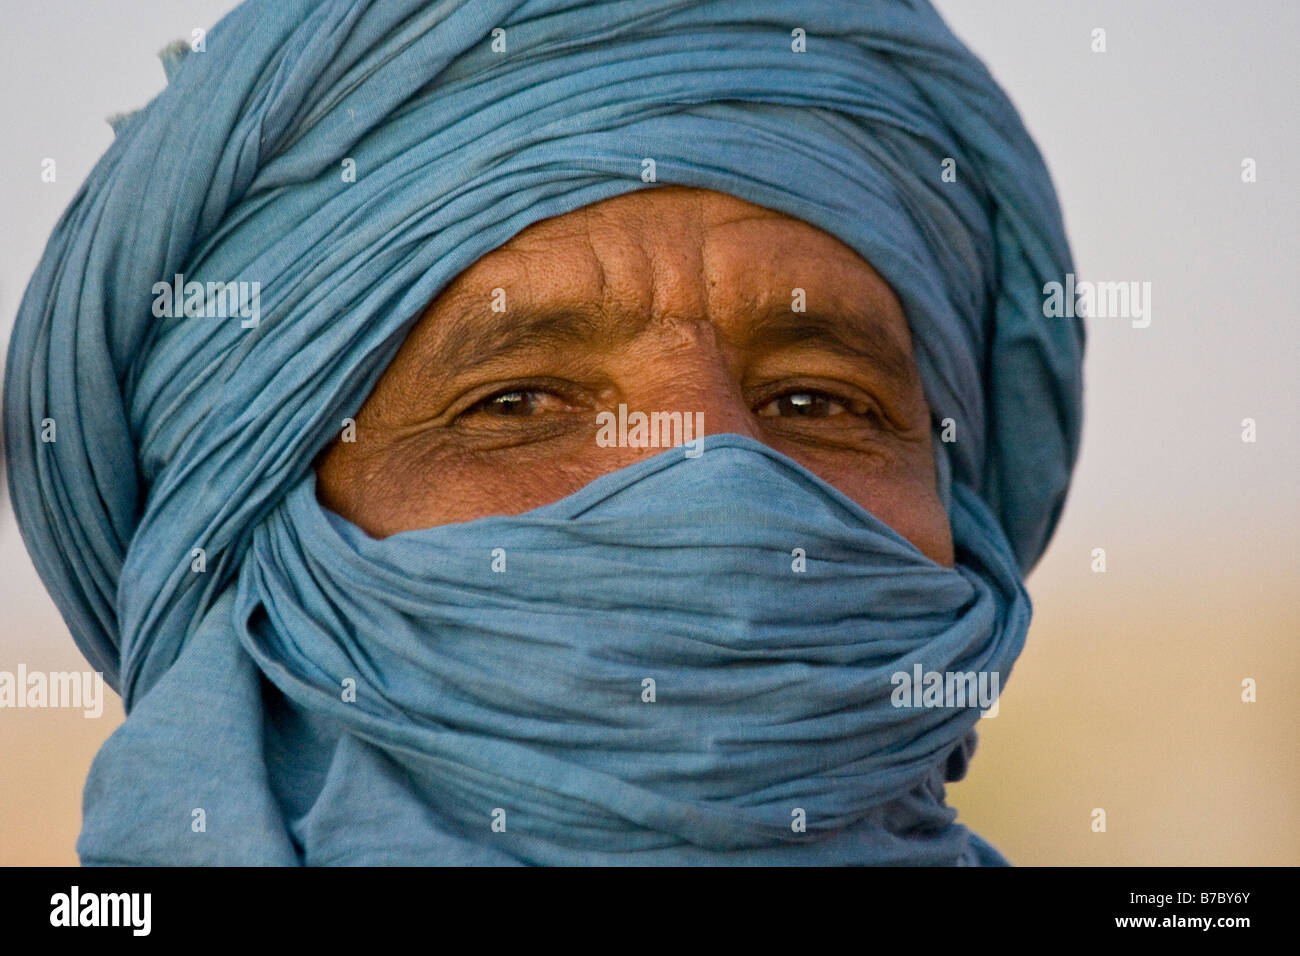 Homme touareg de Tombouctou au Mali Banque D'Images